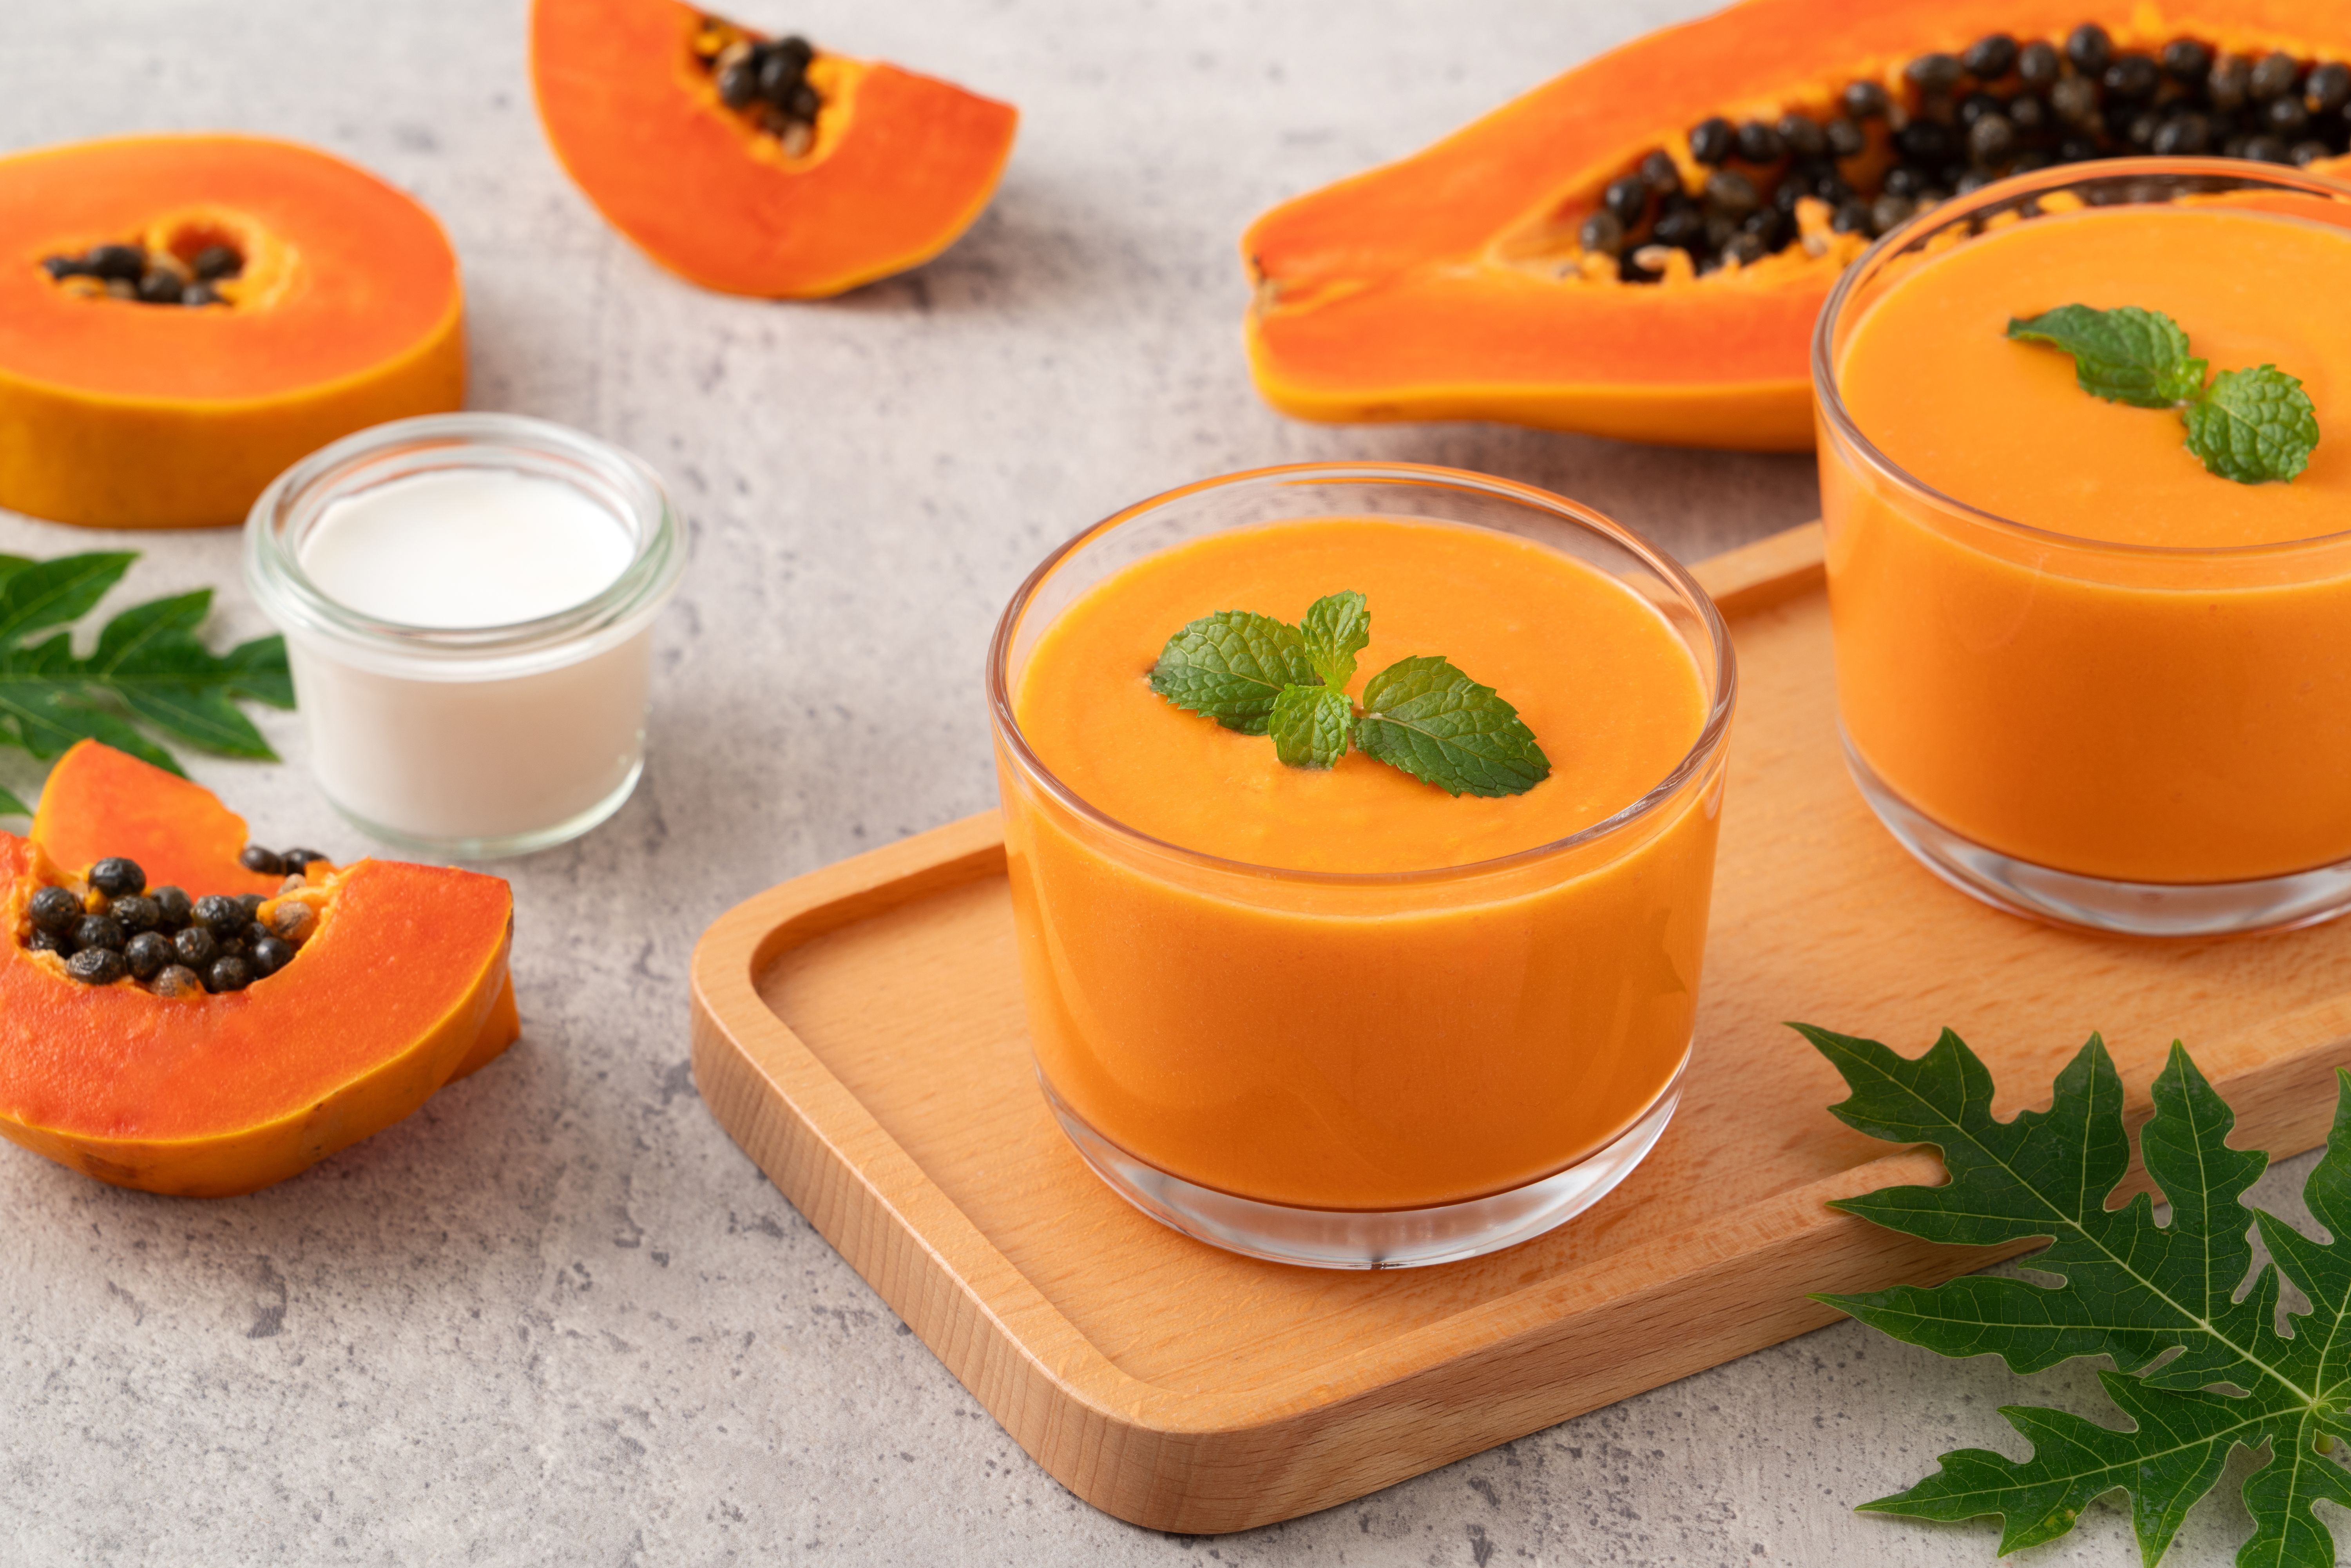 Der Papaya-Smoothie ist der perfekte Start in den Tag oder ein fruchtiger Snack zwischendurch. Die süße und saftige Papaya wird mit cremiger Joghurt, frischen Früchten und einem Hauch von Minze zu einem köstlichen und nährstoffreichen Smoothie gemixt.